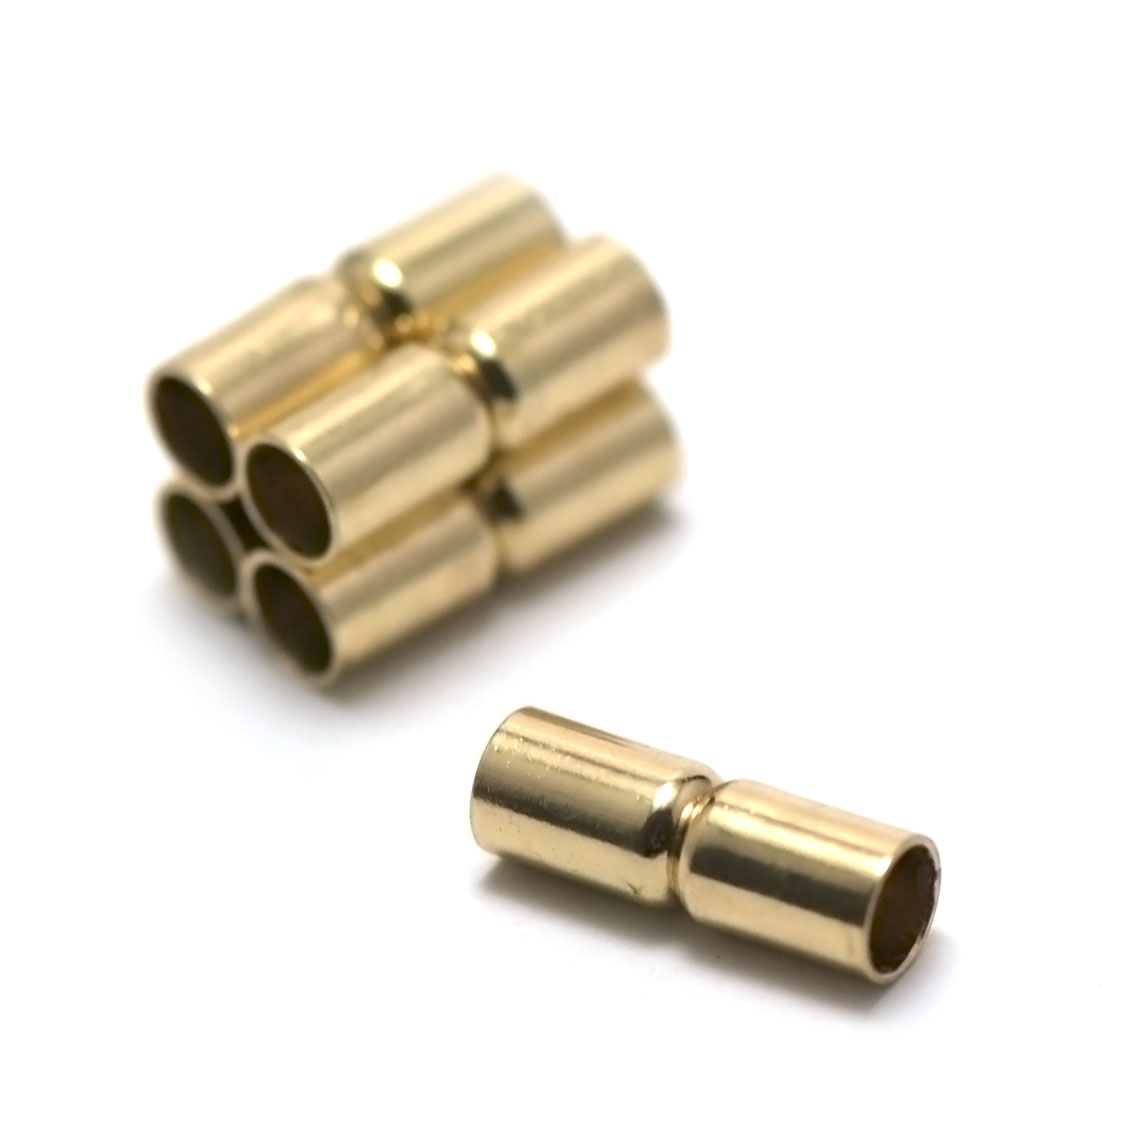 2 fermoirs magnétiques cylindre18x6 mm,doré ,pour cuir et cordon